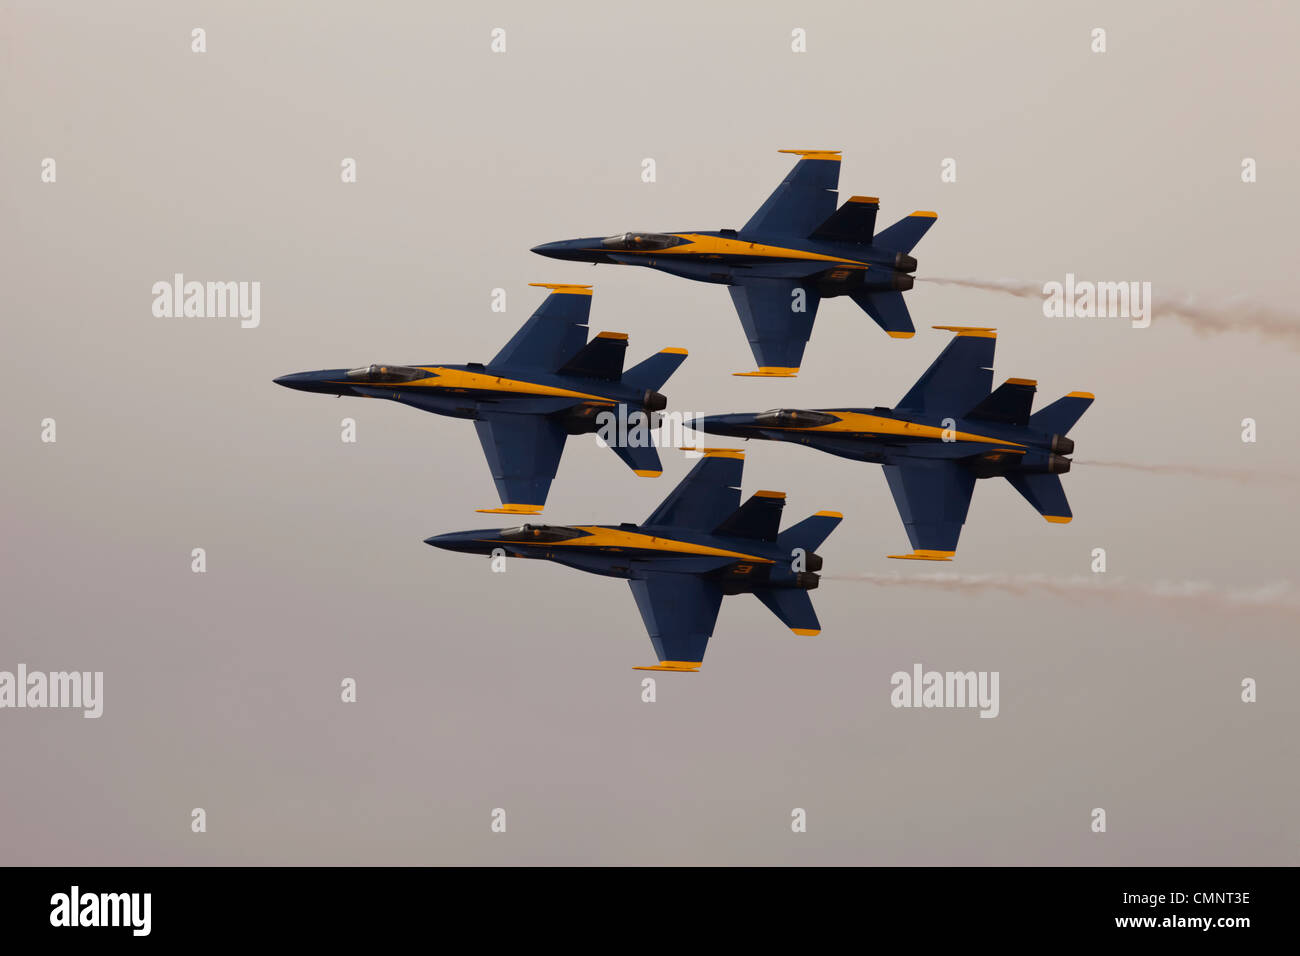 US Navy Blue angolo superiorità aerea F-18 Hornet jet da combattimento. Chiudere la formazione di diamante contro la tempesta cloud. Foto Stock